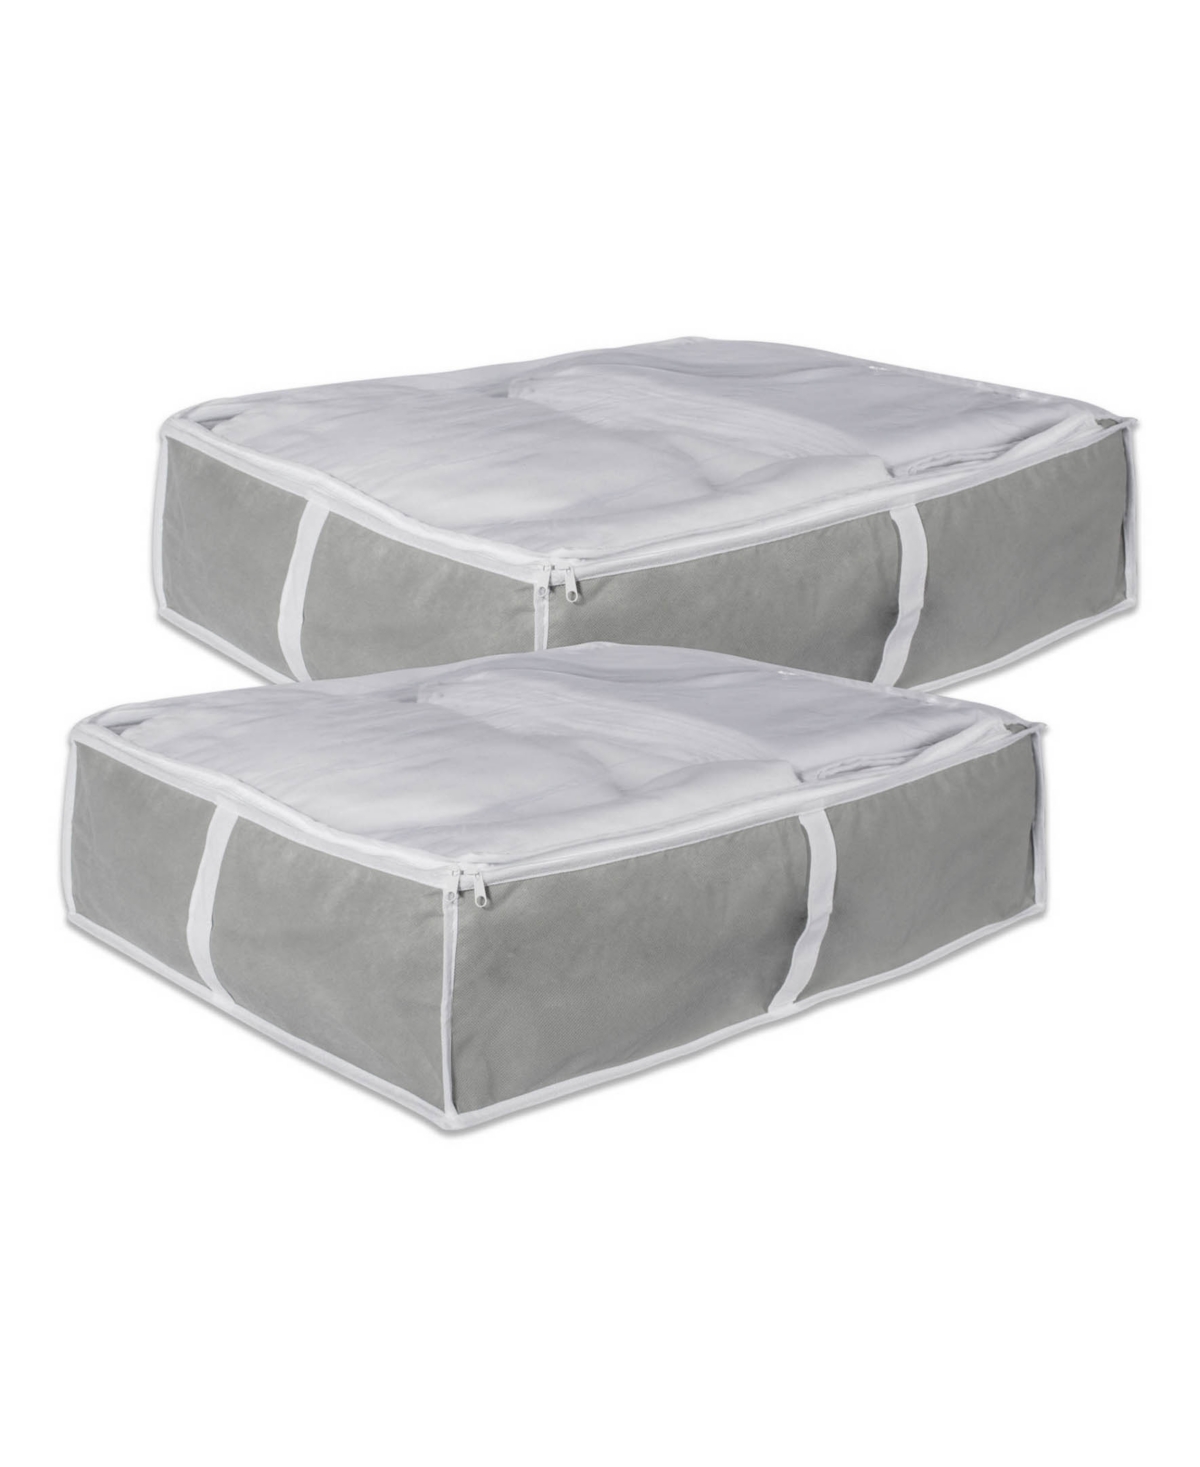 Soft Storage Set of 2 - Gray